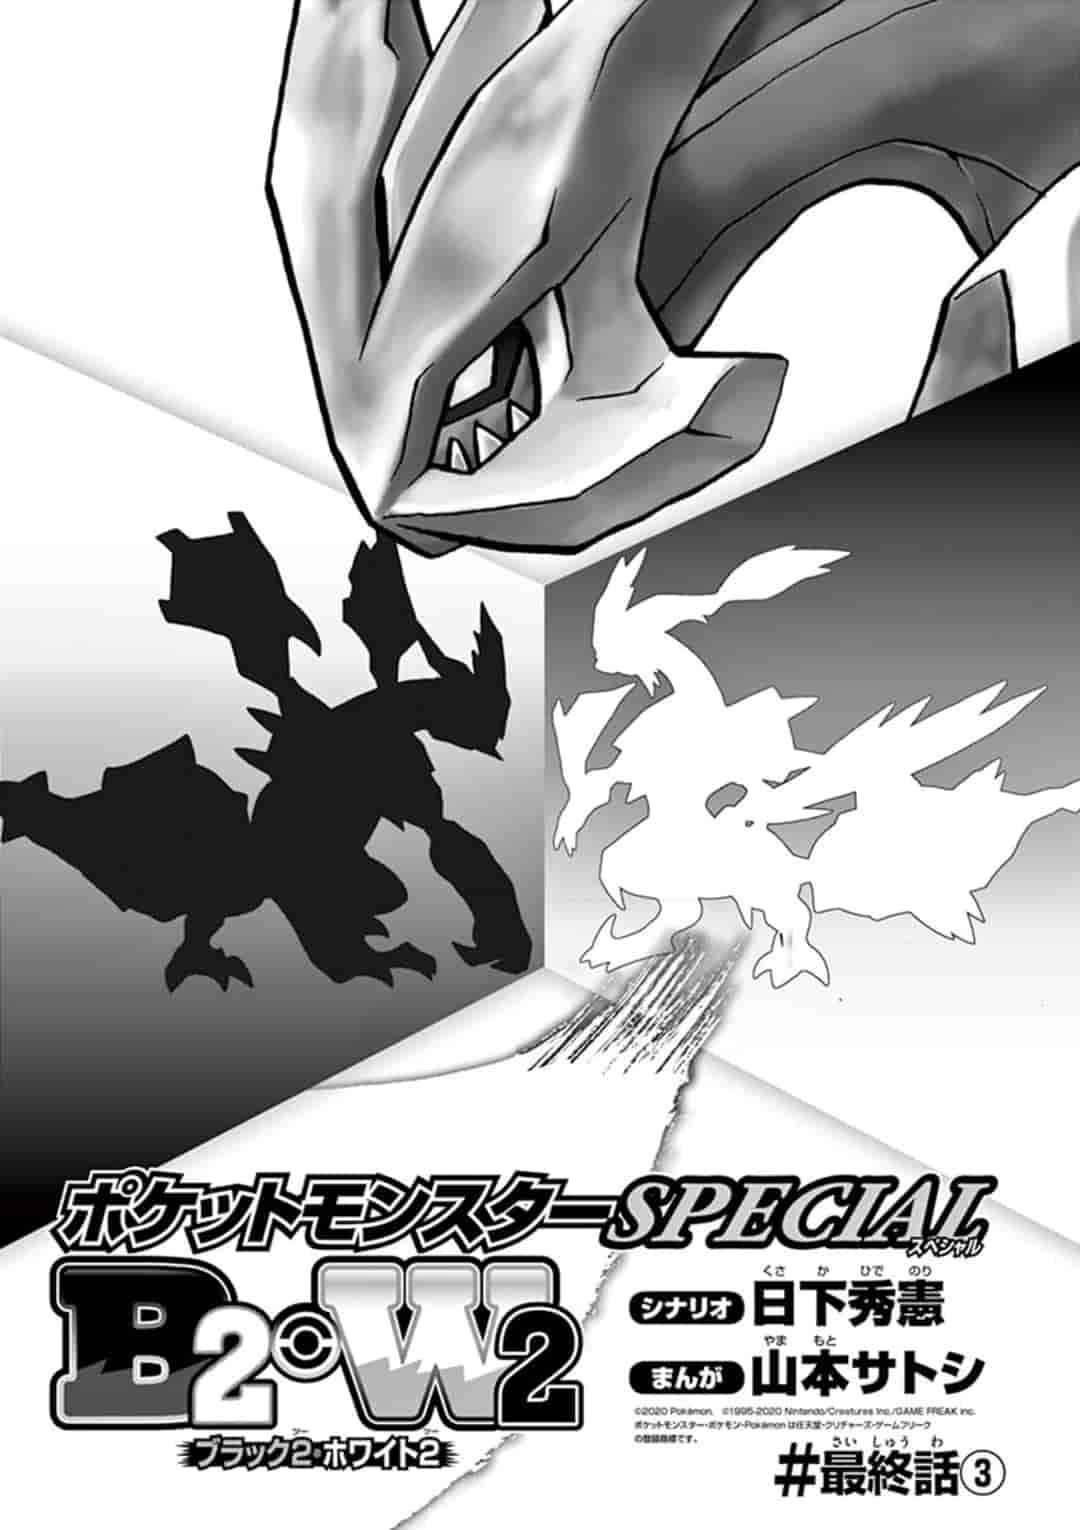 Pokémon Special Ch. 548.3 B2W2 Final Chapter #3